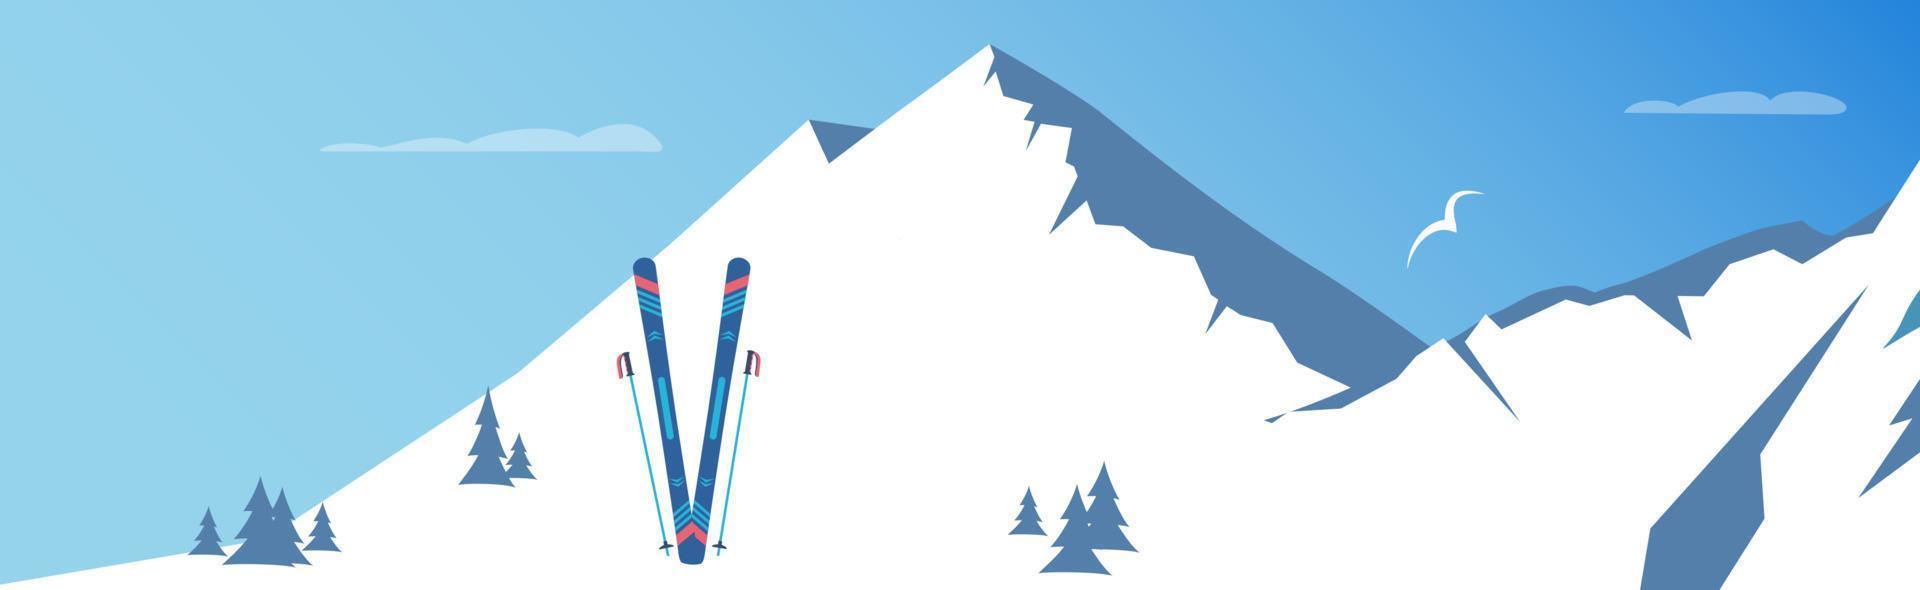 skidåkning och snöig berg. vinter- sport. vektor illustration.